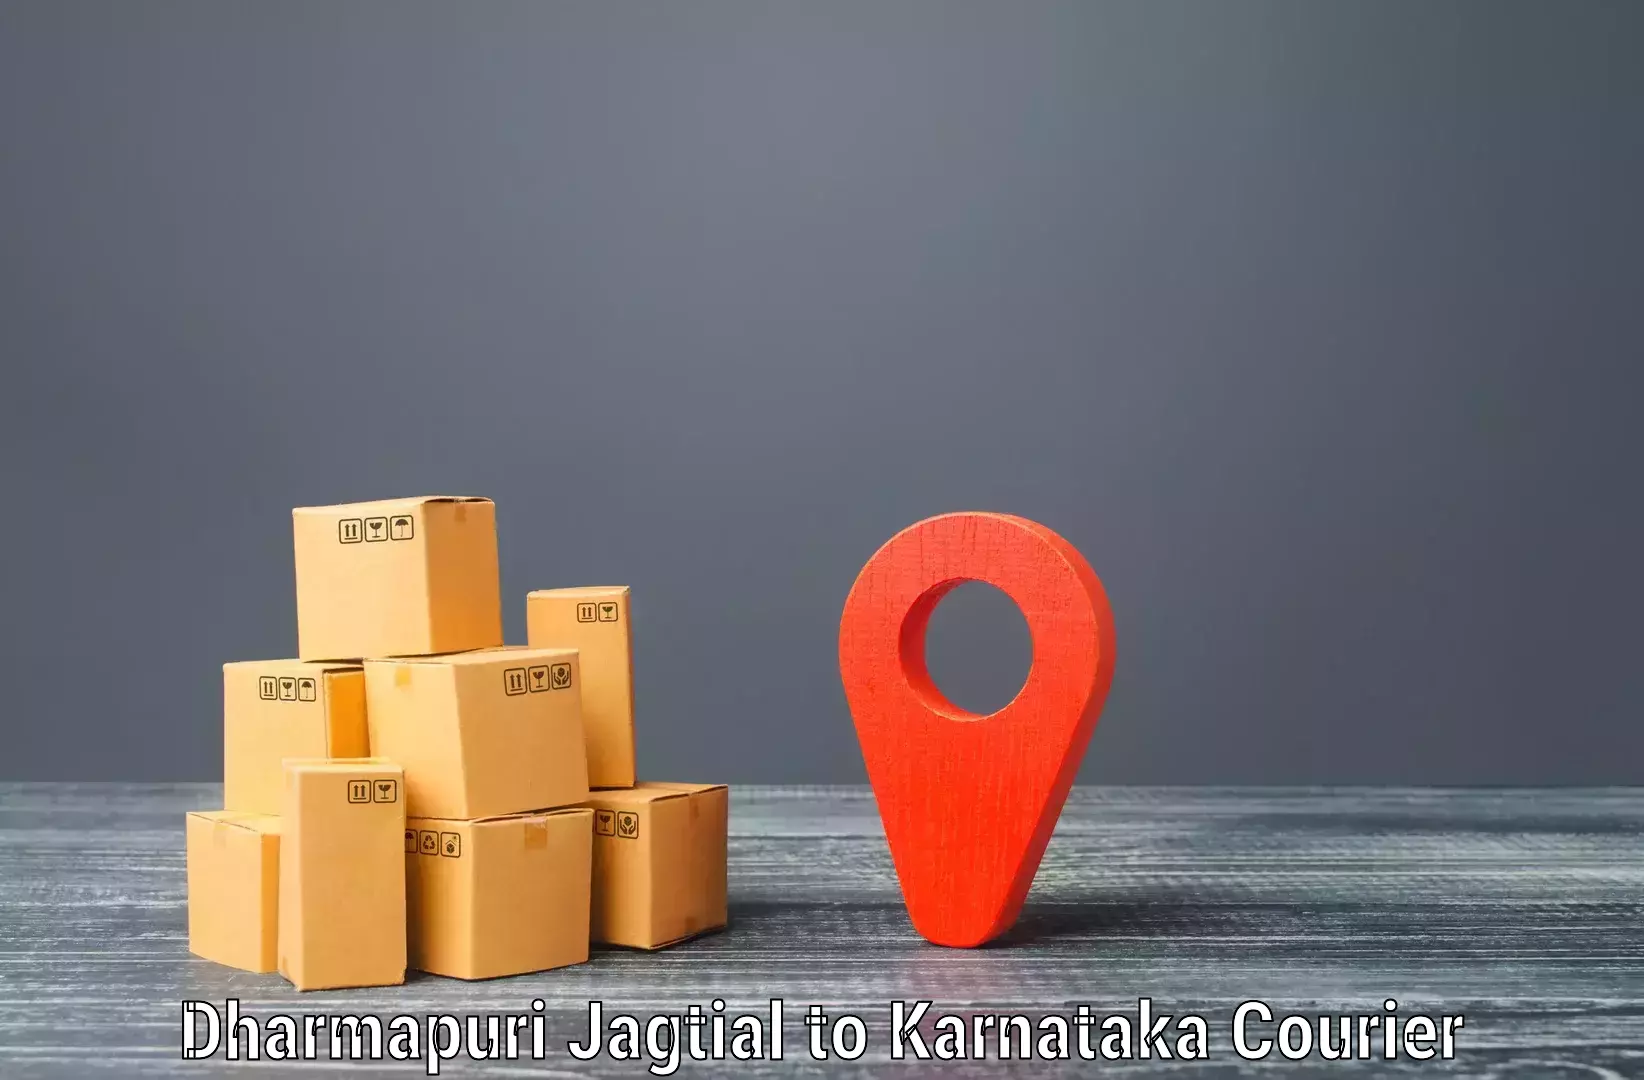 Global delivery options in Dharmapuri Jagtial to Bailhongal